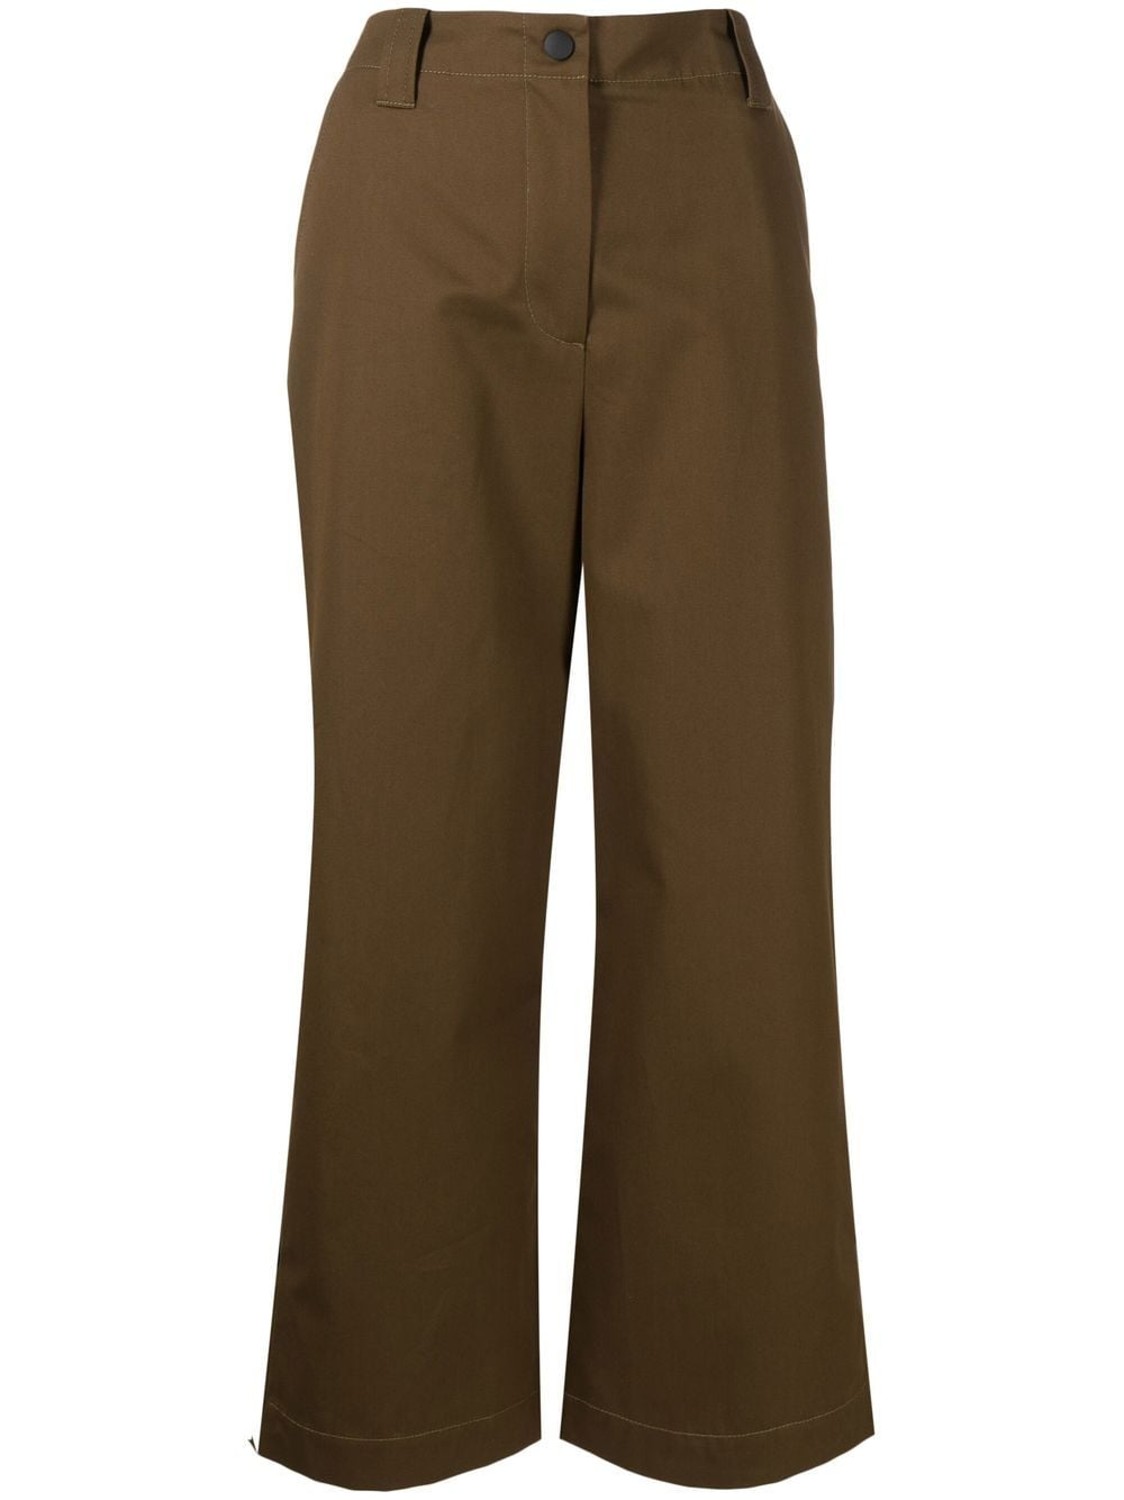 shop MSGM  Pantaloni: Pantaloni MSGM, vita alta, chiusura frontale con zip e bottone, tasche laterali, bottoni lungo la gamba, lunghezza alla caviglia.

Composizione: 100% cotone. number 2480